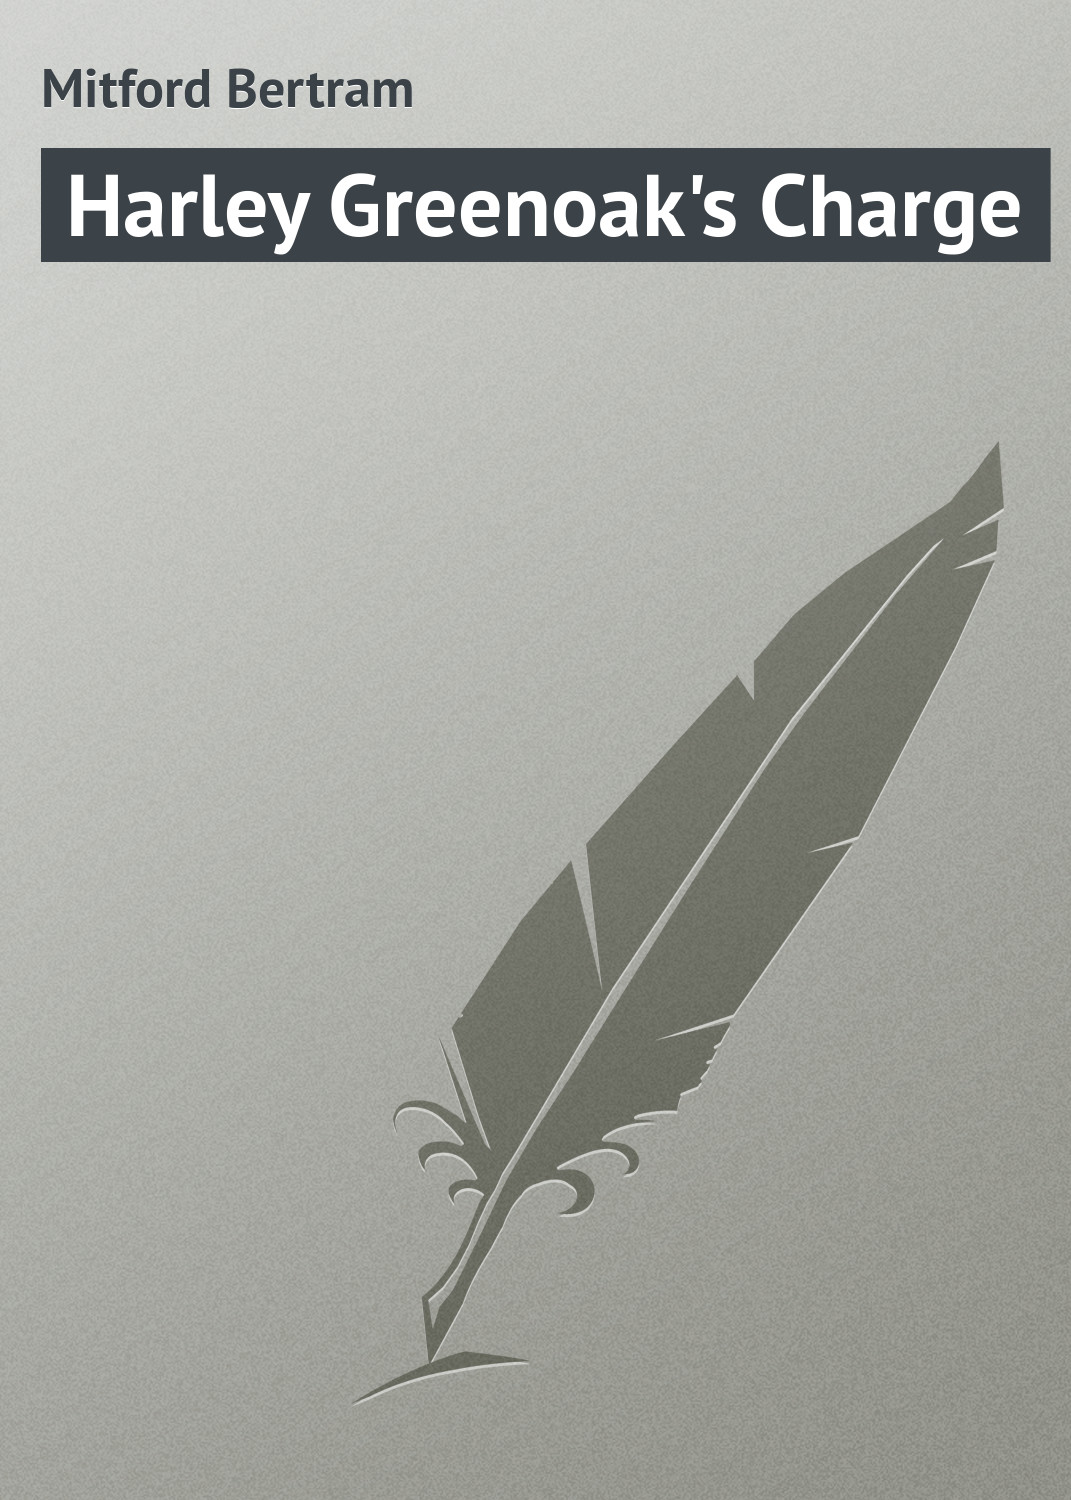 Книга Harley Greenoak's Charge из серии , созданная Bertram Mitford, может относится к жанру Зарубежная классика. Стоимость электронной книги Harley Greenoak's Charge с идентификатором 23166067 составляет 5.99 руб.